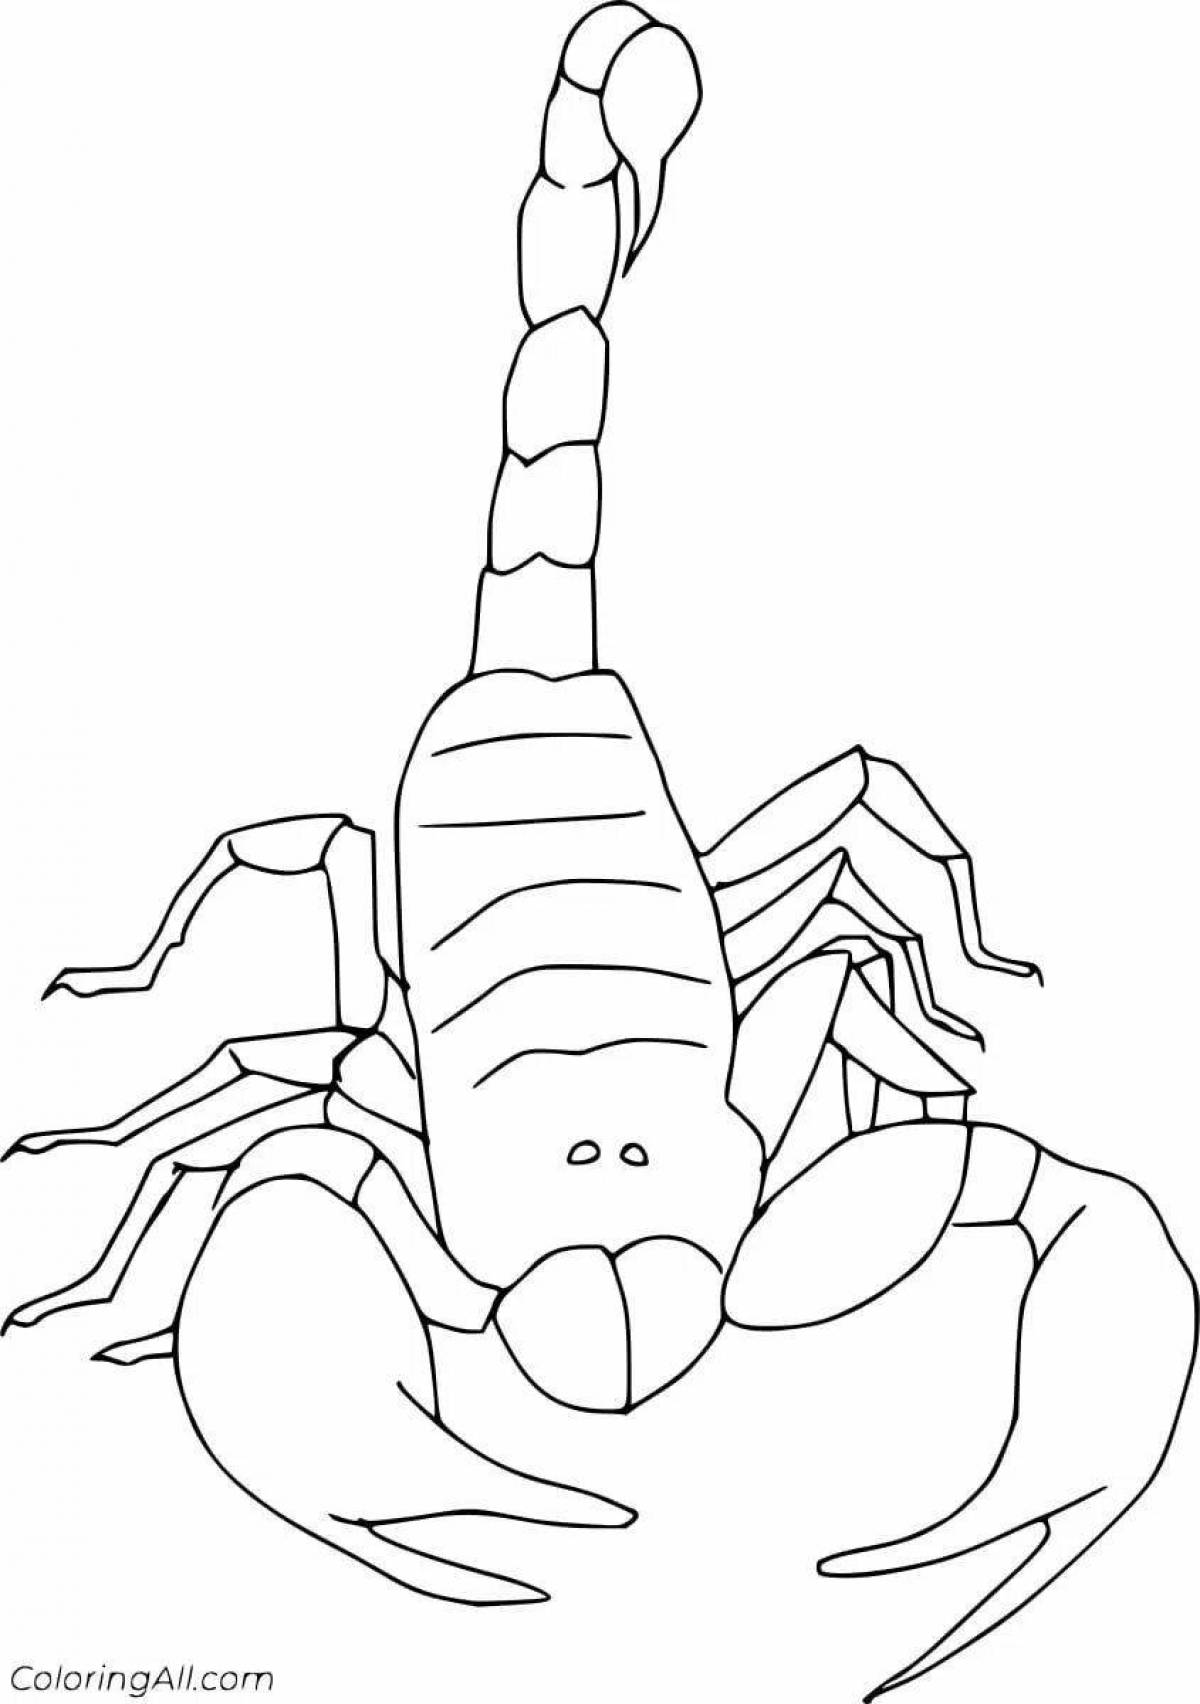 Славный скорпион раскраски для детей